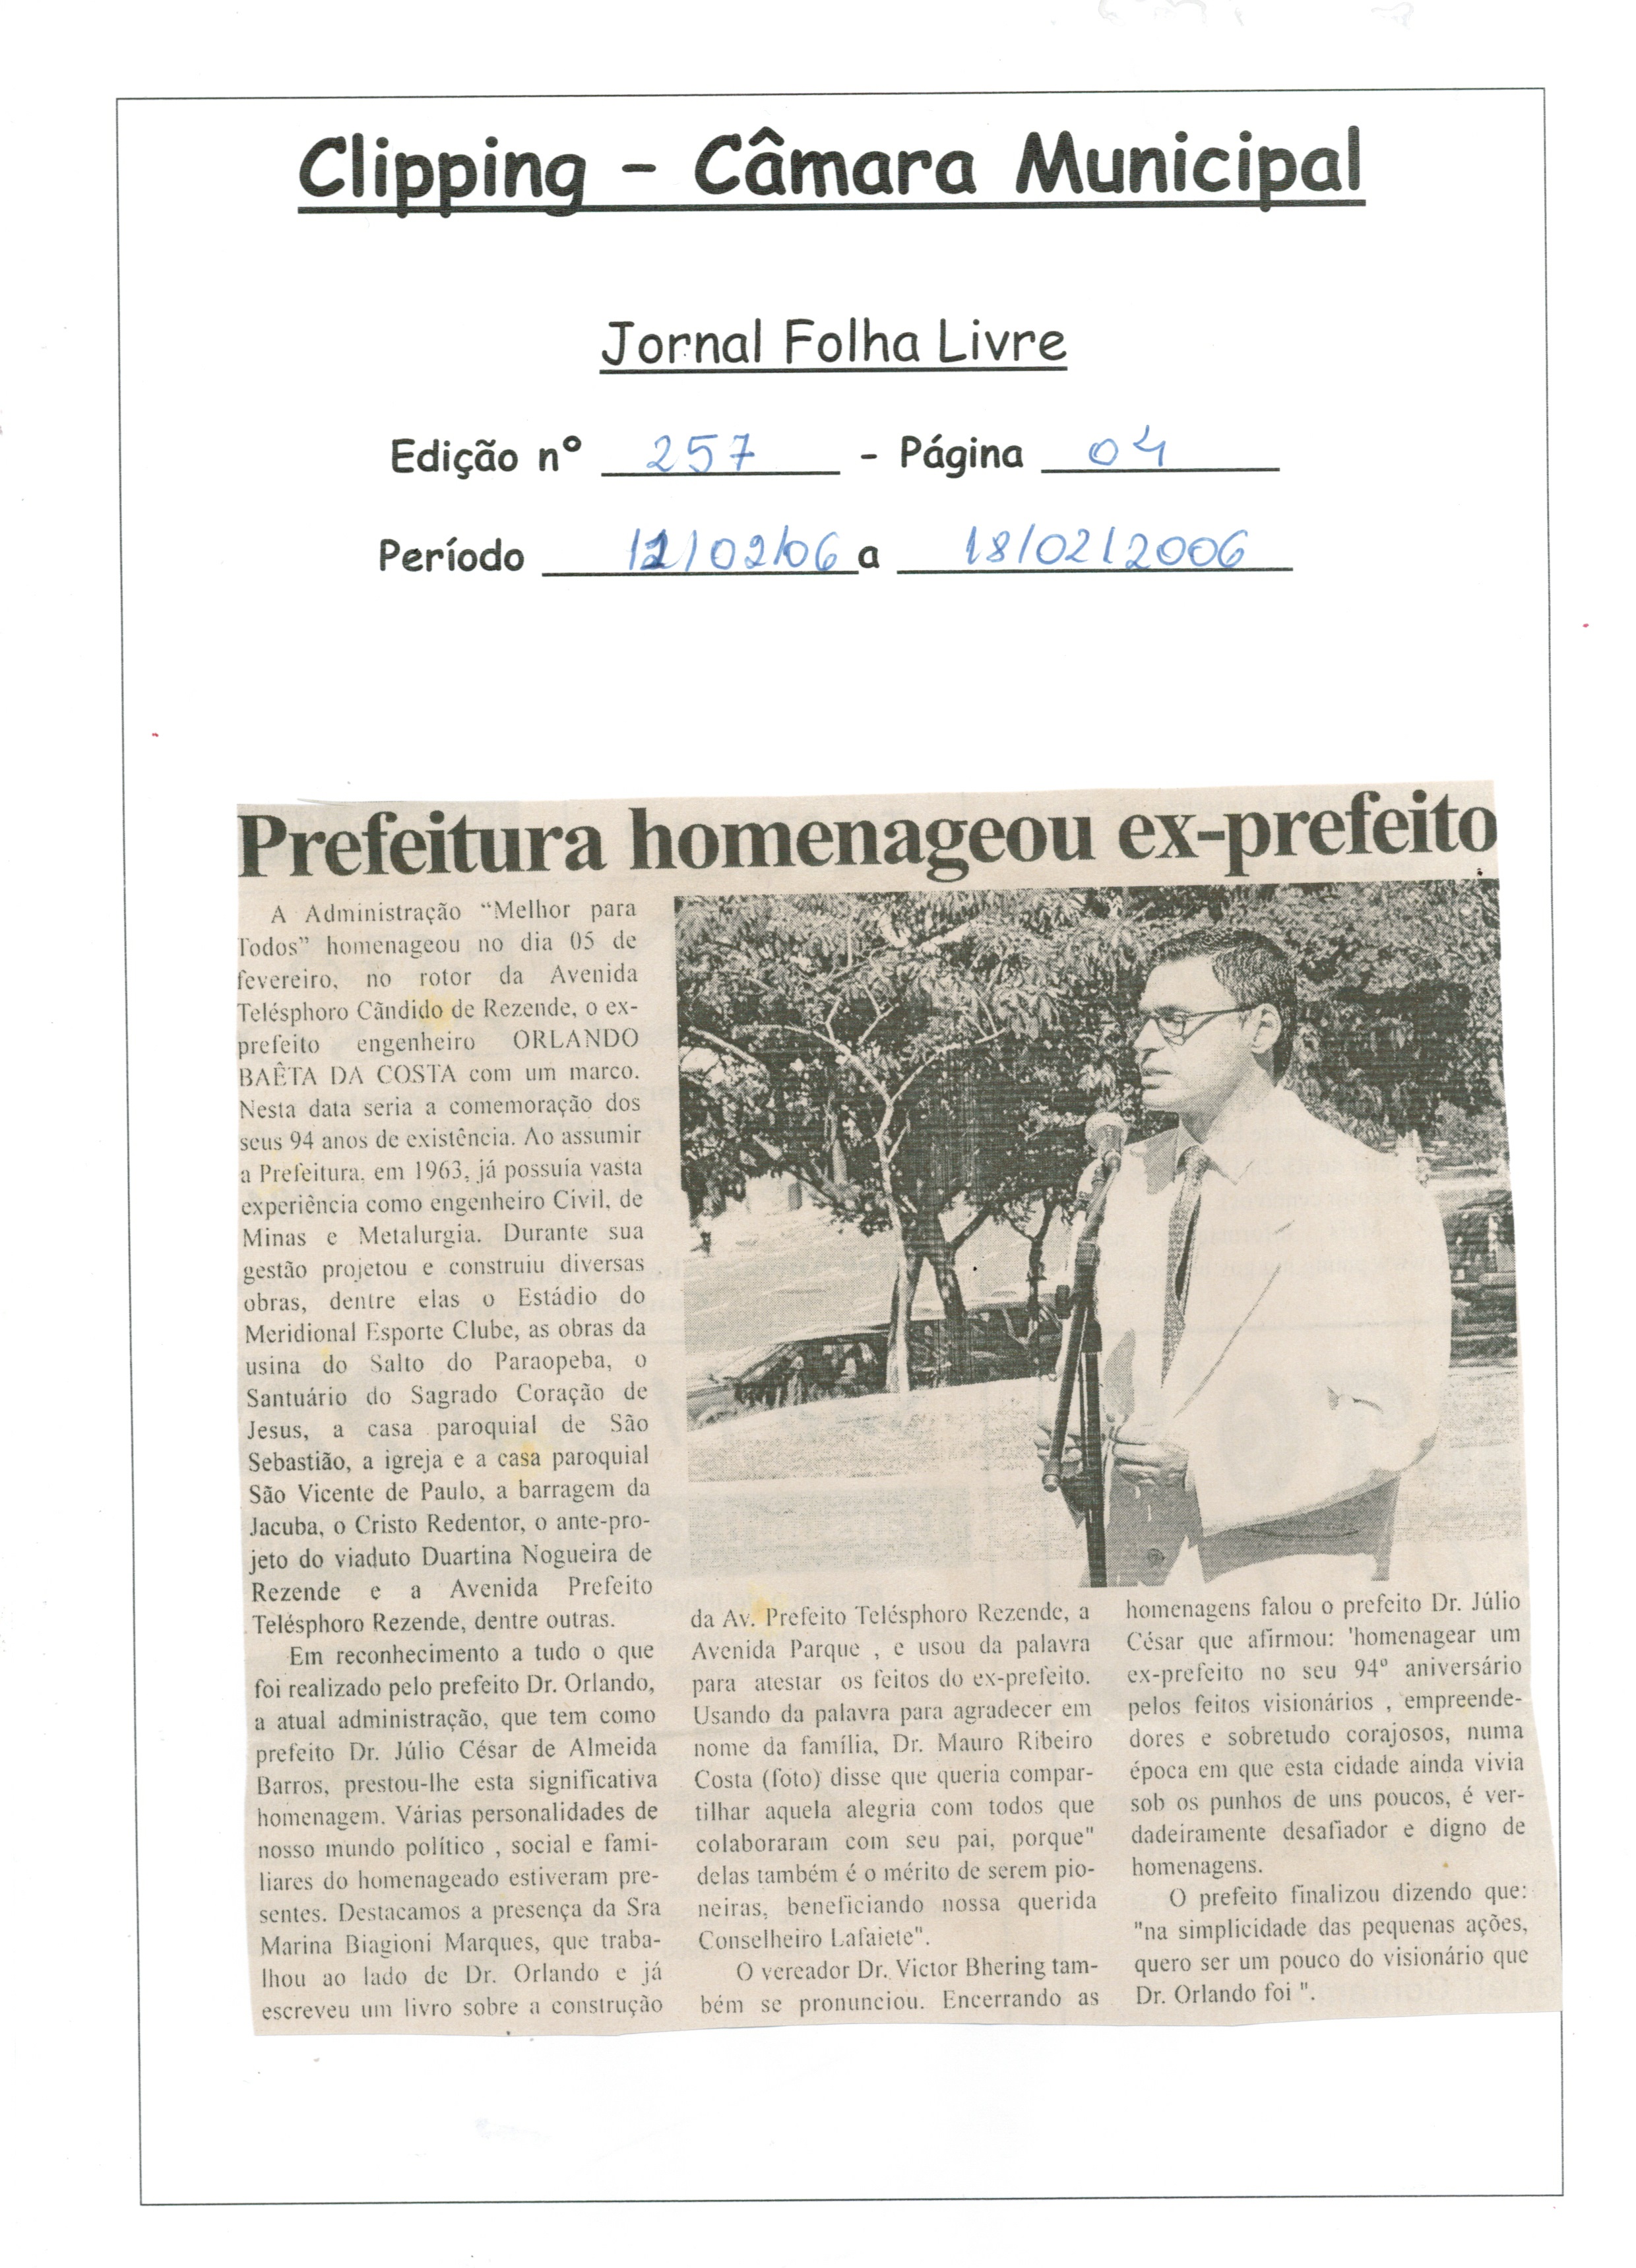 Prefeitura homenageou ex-prefeito. Folha Livre, Conselheiro Lafaiete, 12 fev. 2006, 257ª ed., p. 04.